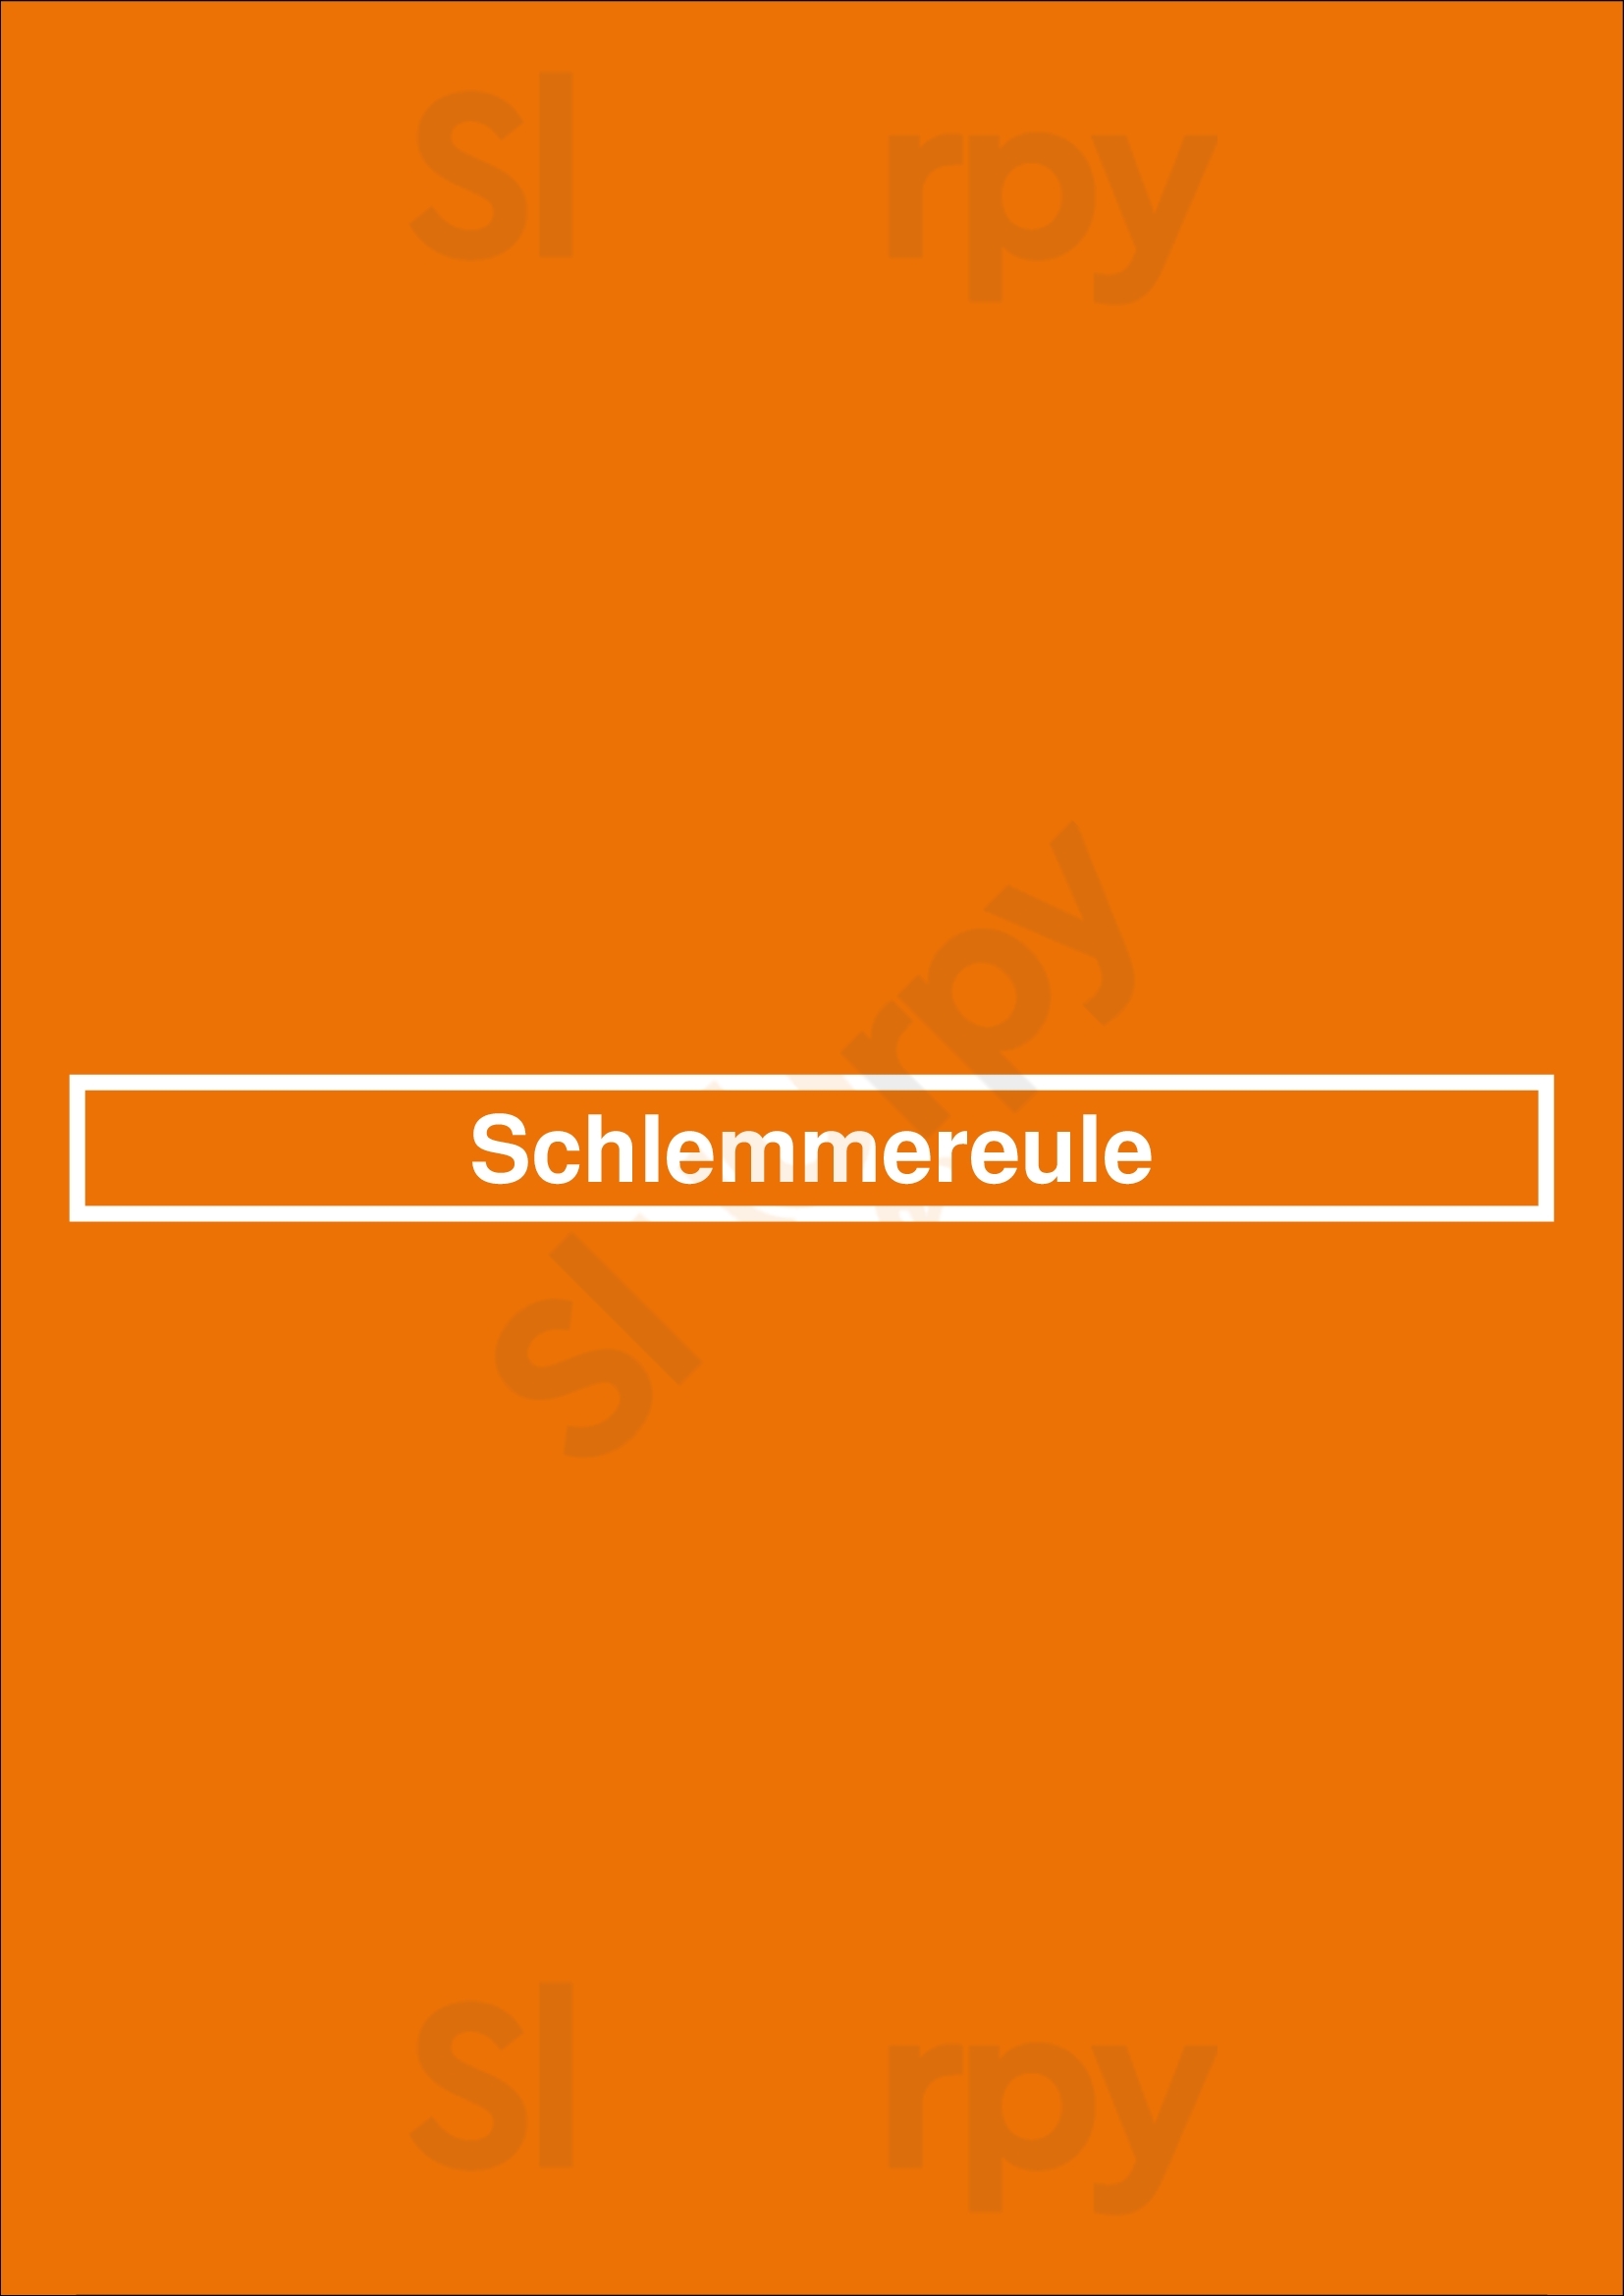 Schlemmereule Trier Menu - 1